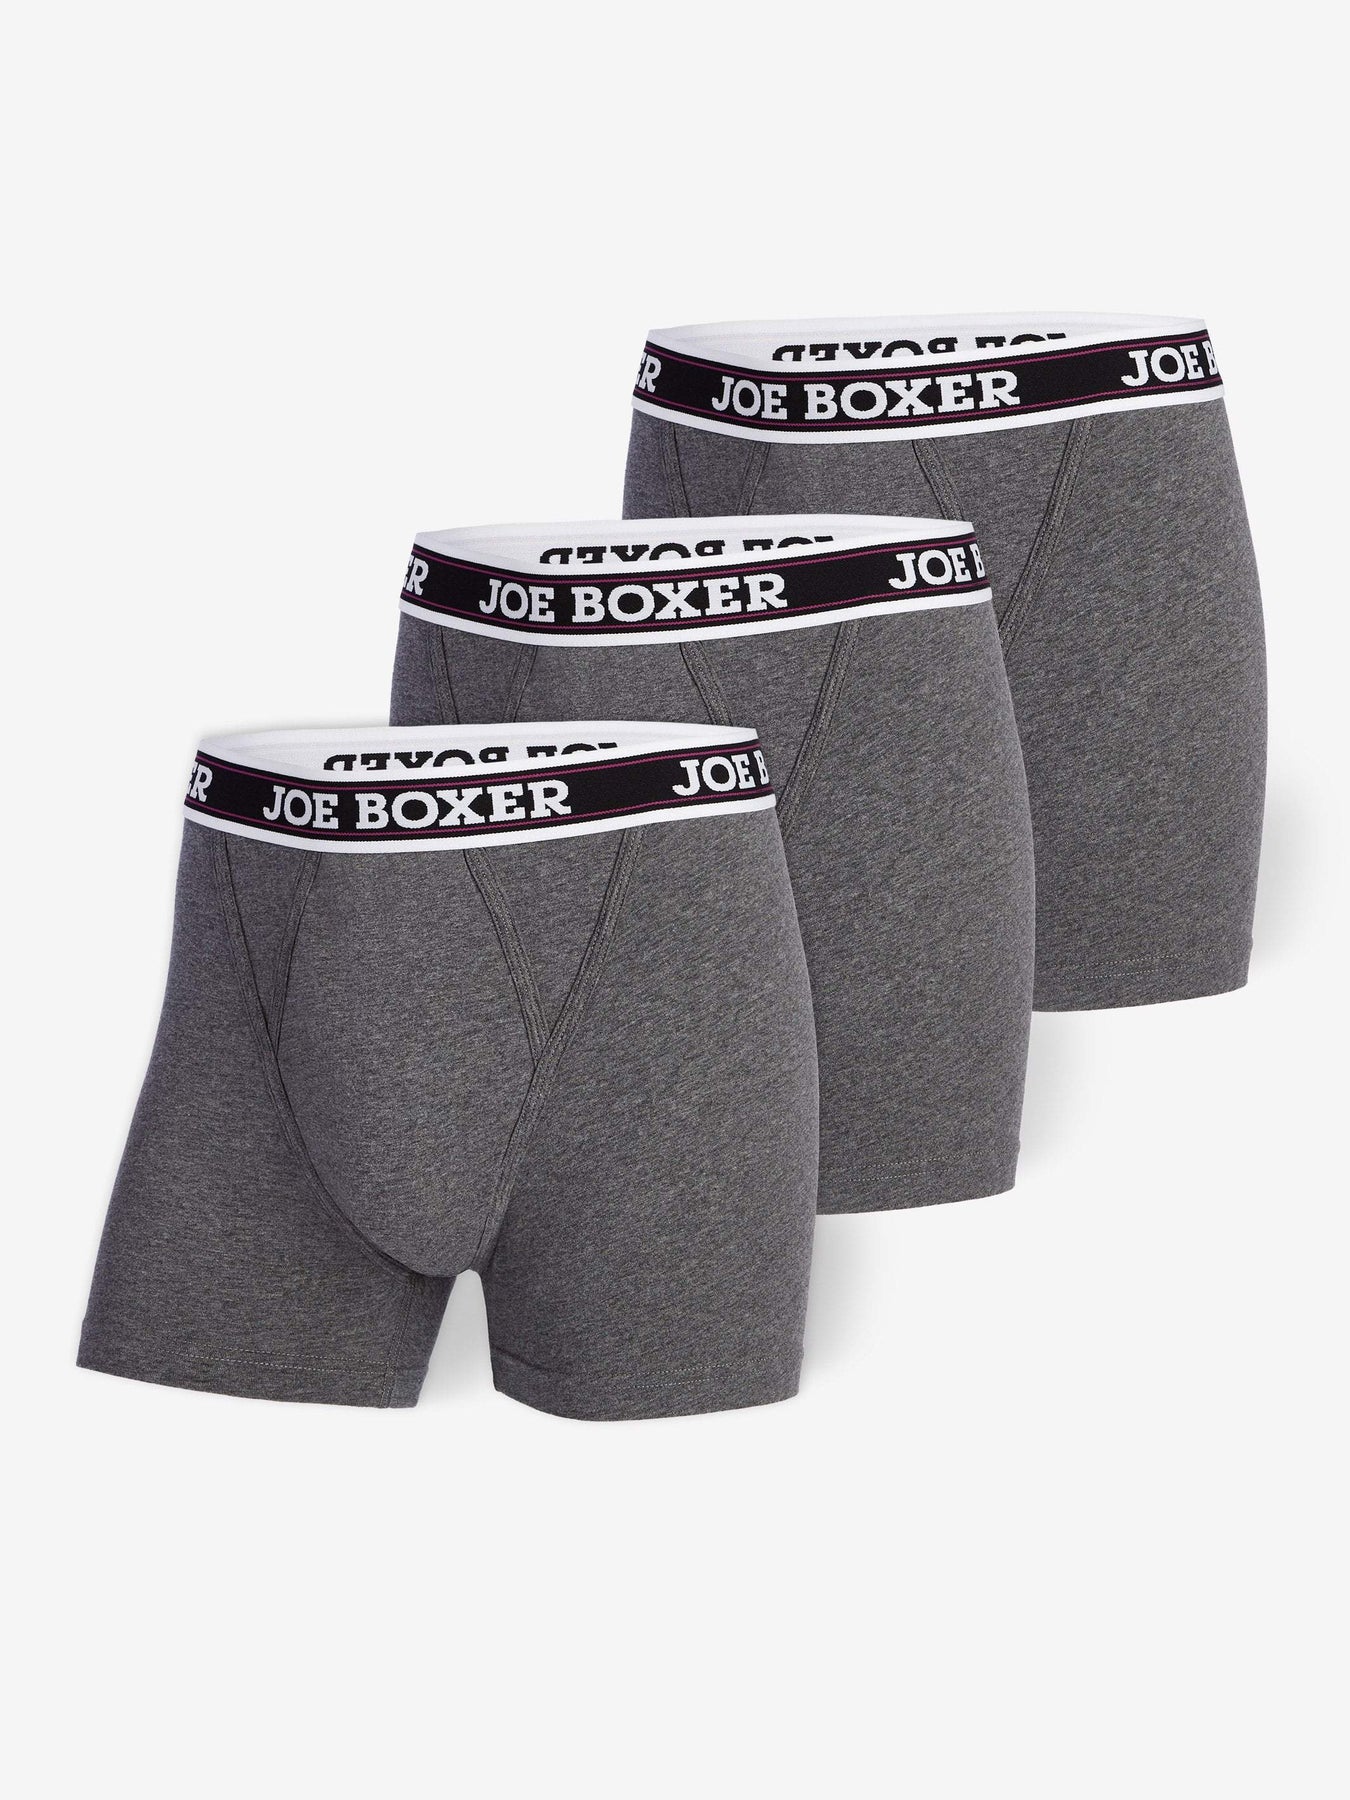 Men's Low Rise Contour Pouch Trunks Briefs Underwear